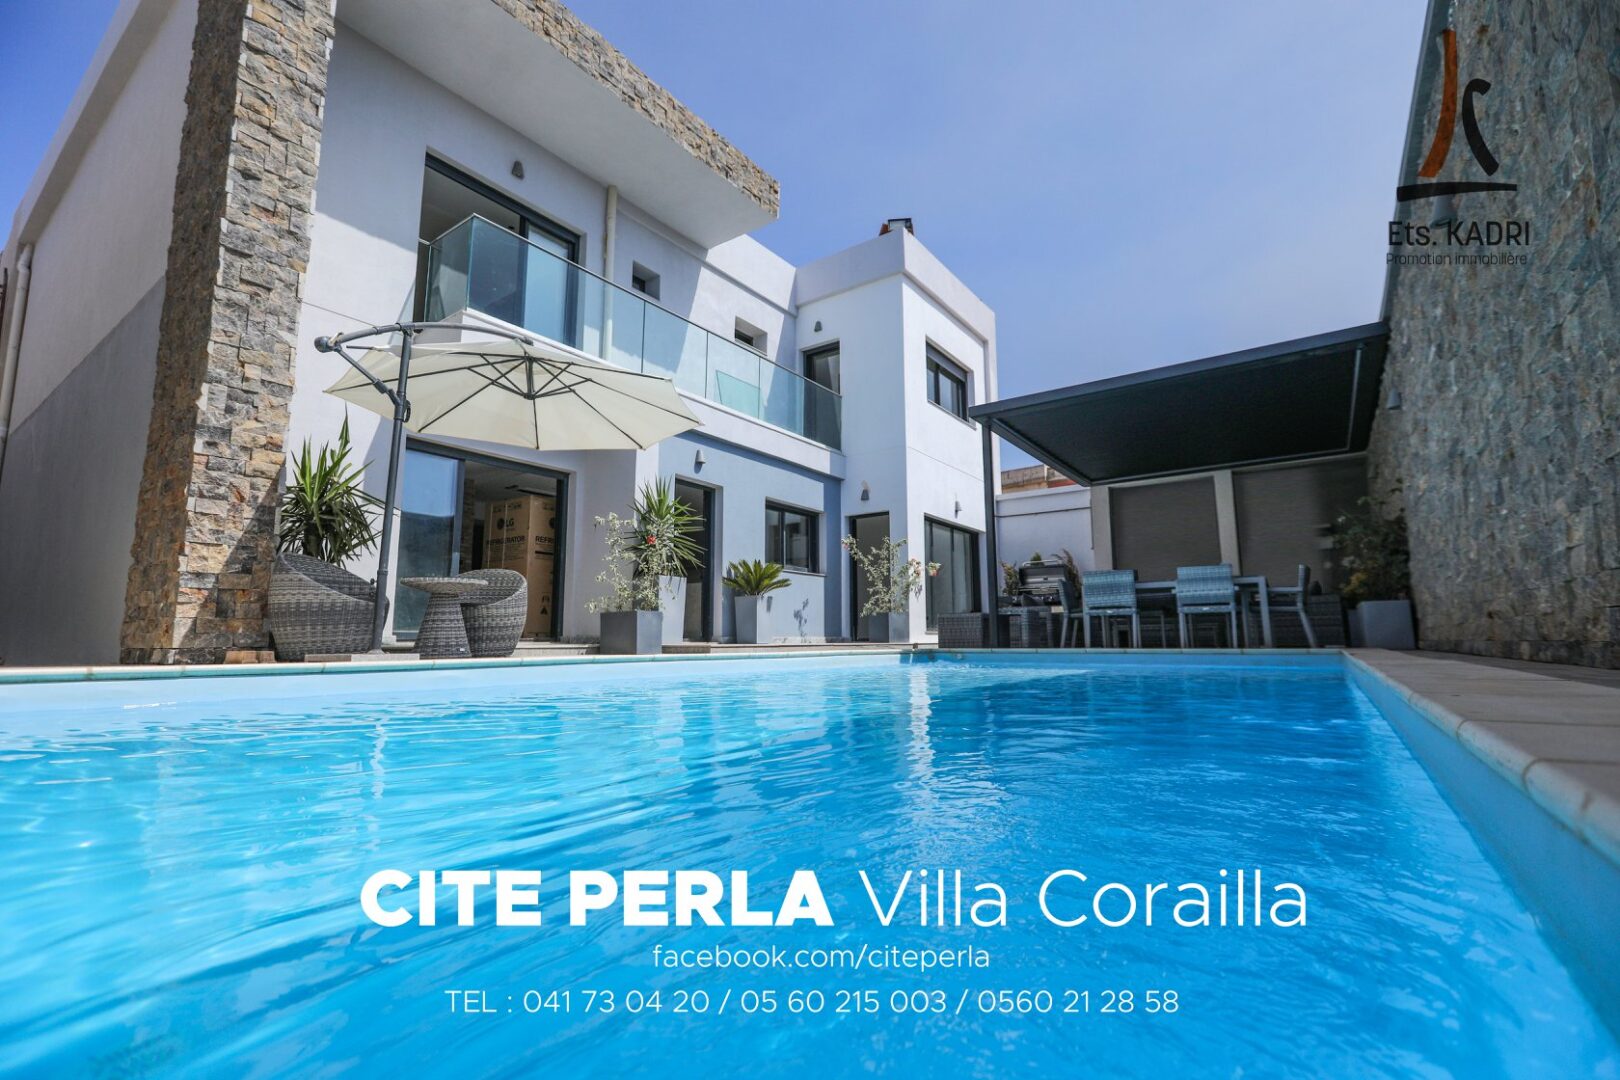 Villa Corailla